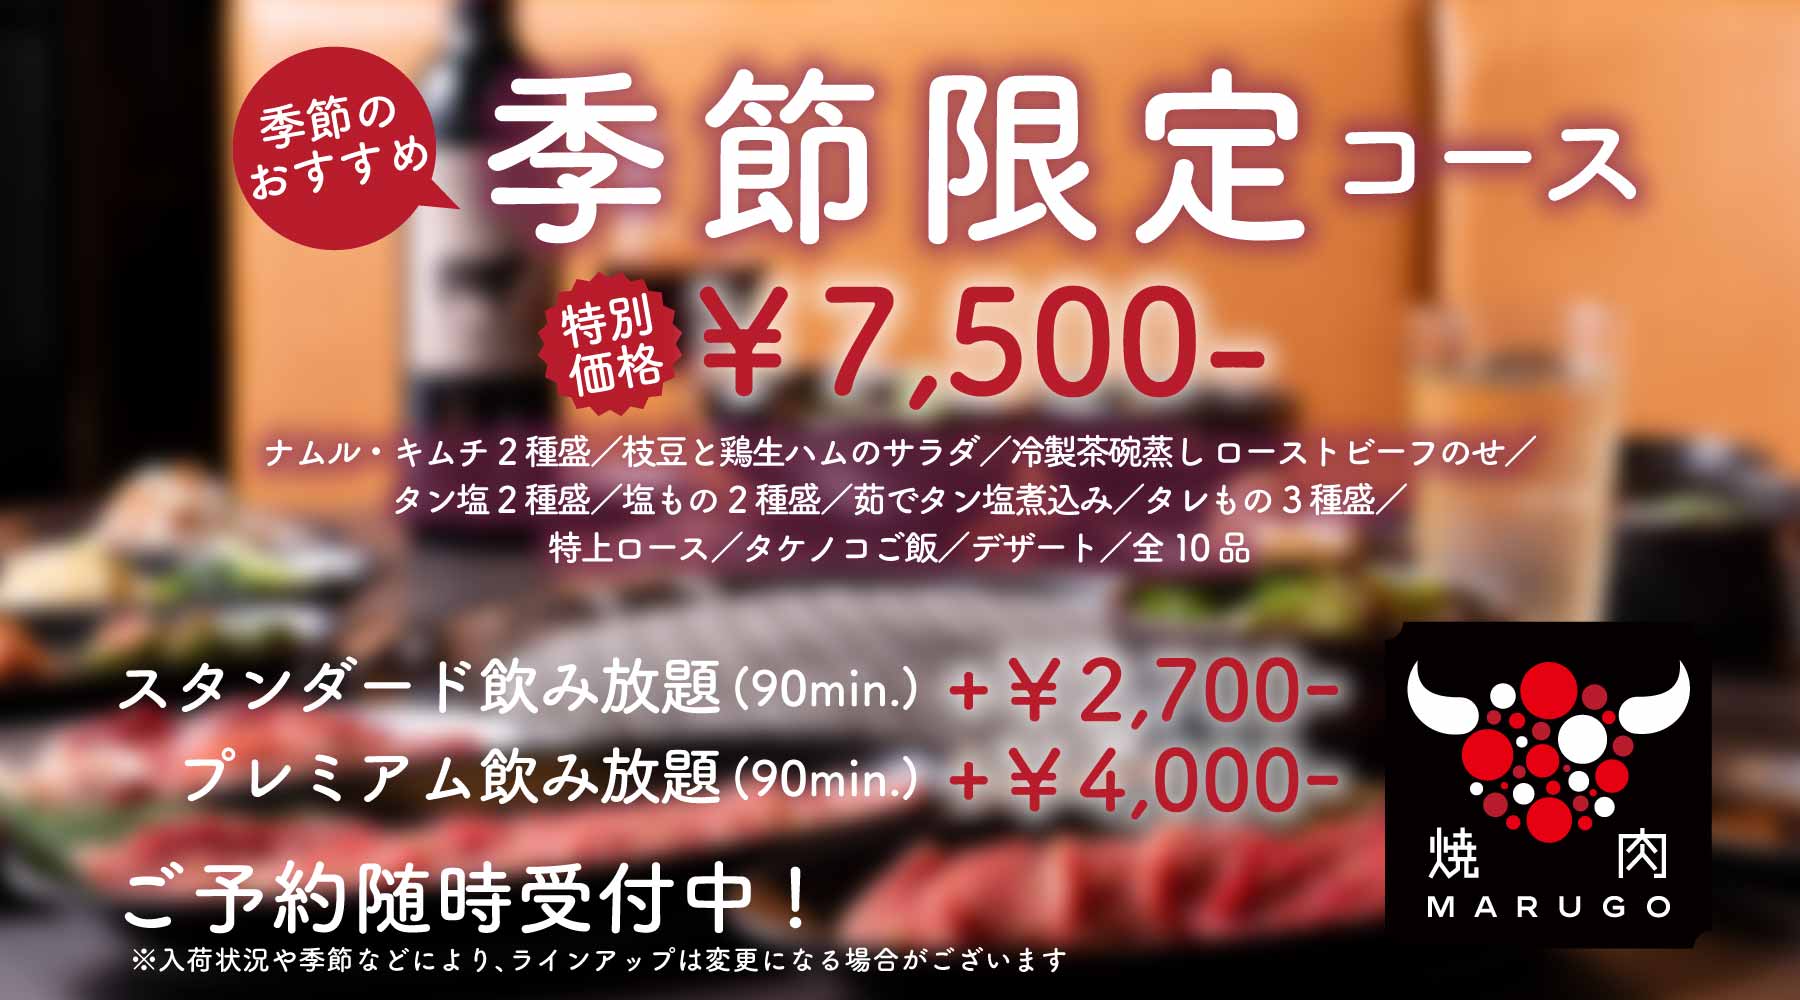 おすすめ「季節限定コース」¥7,500-